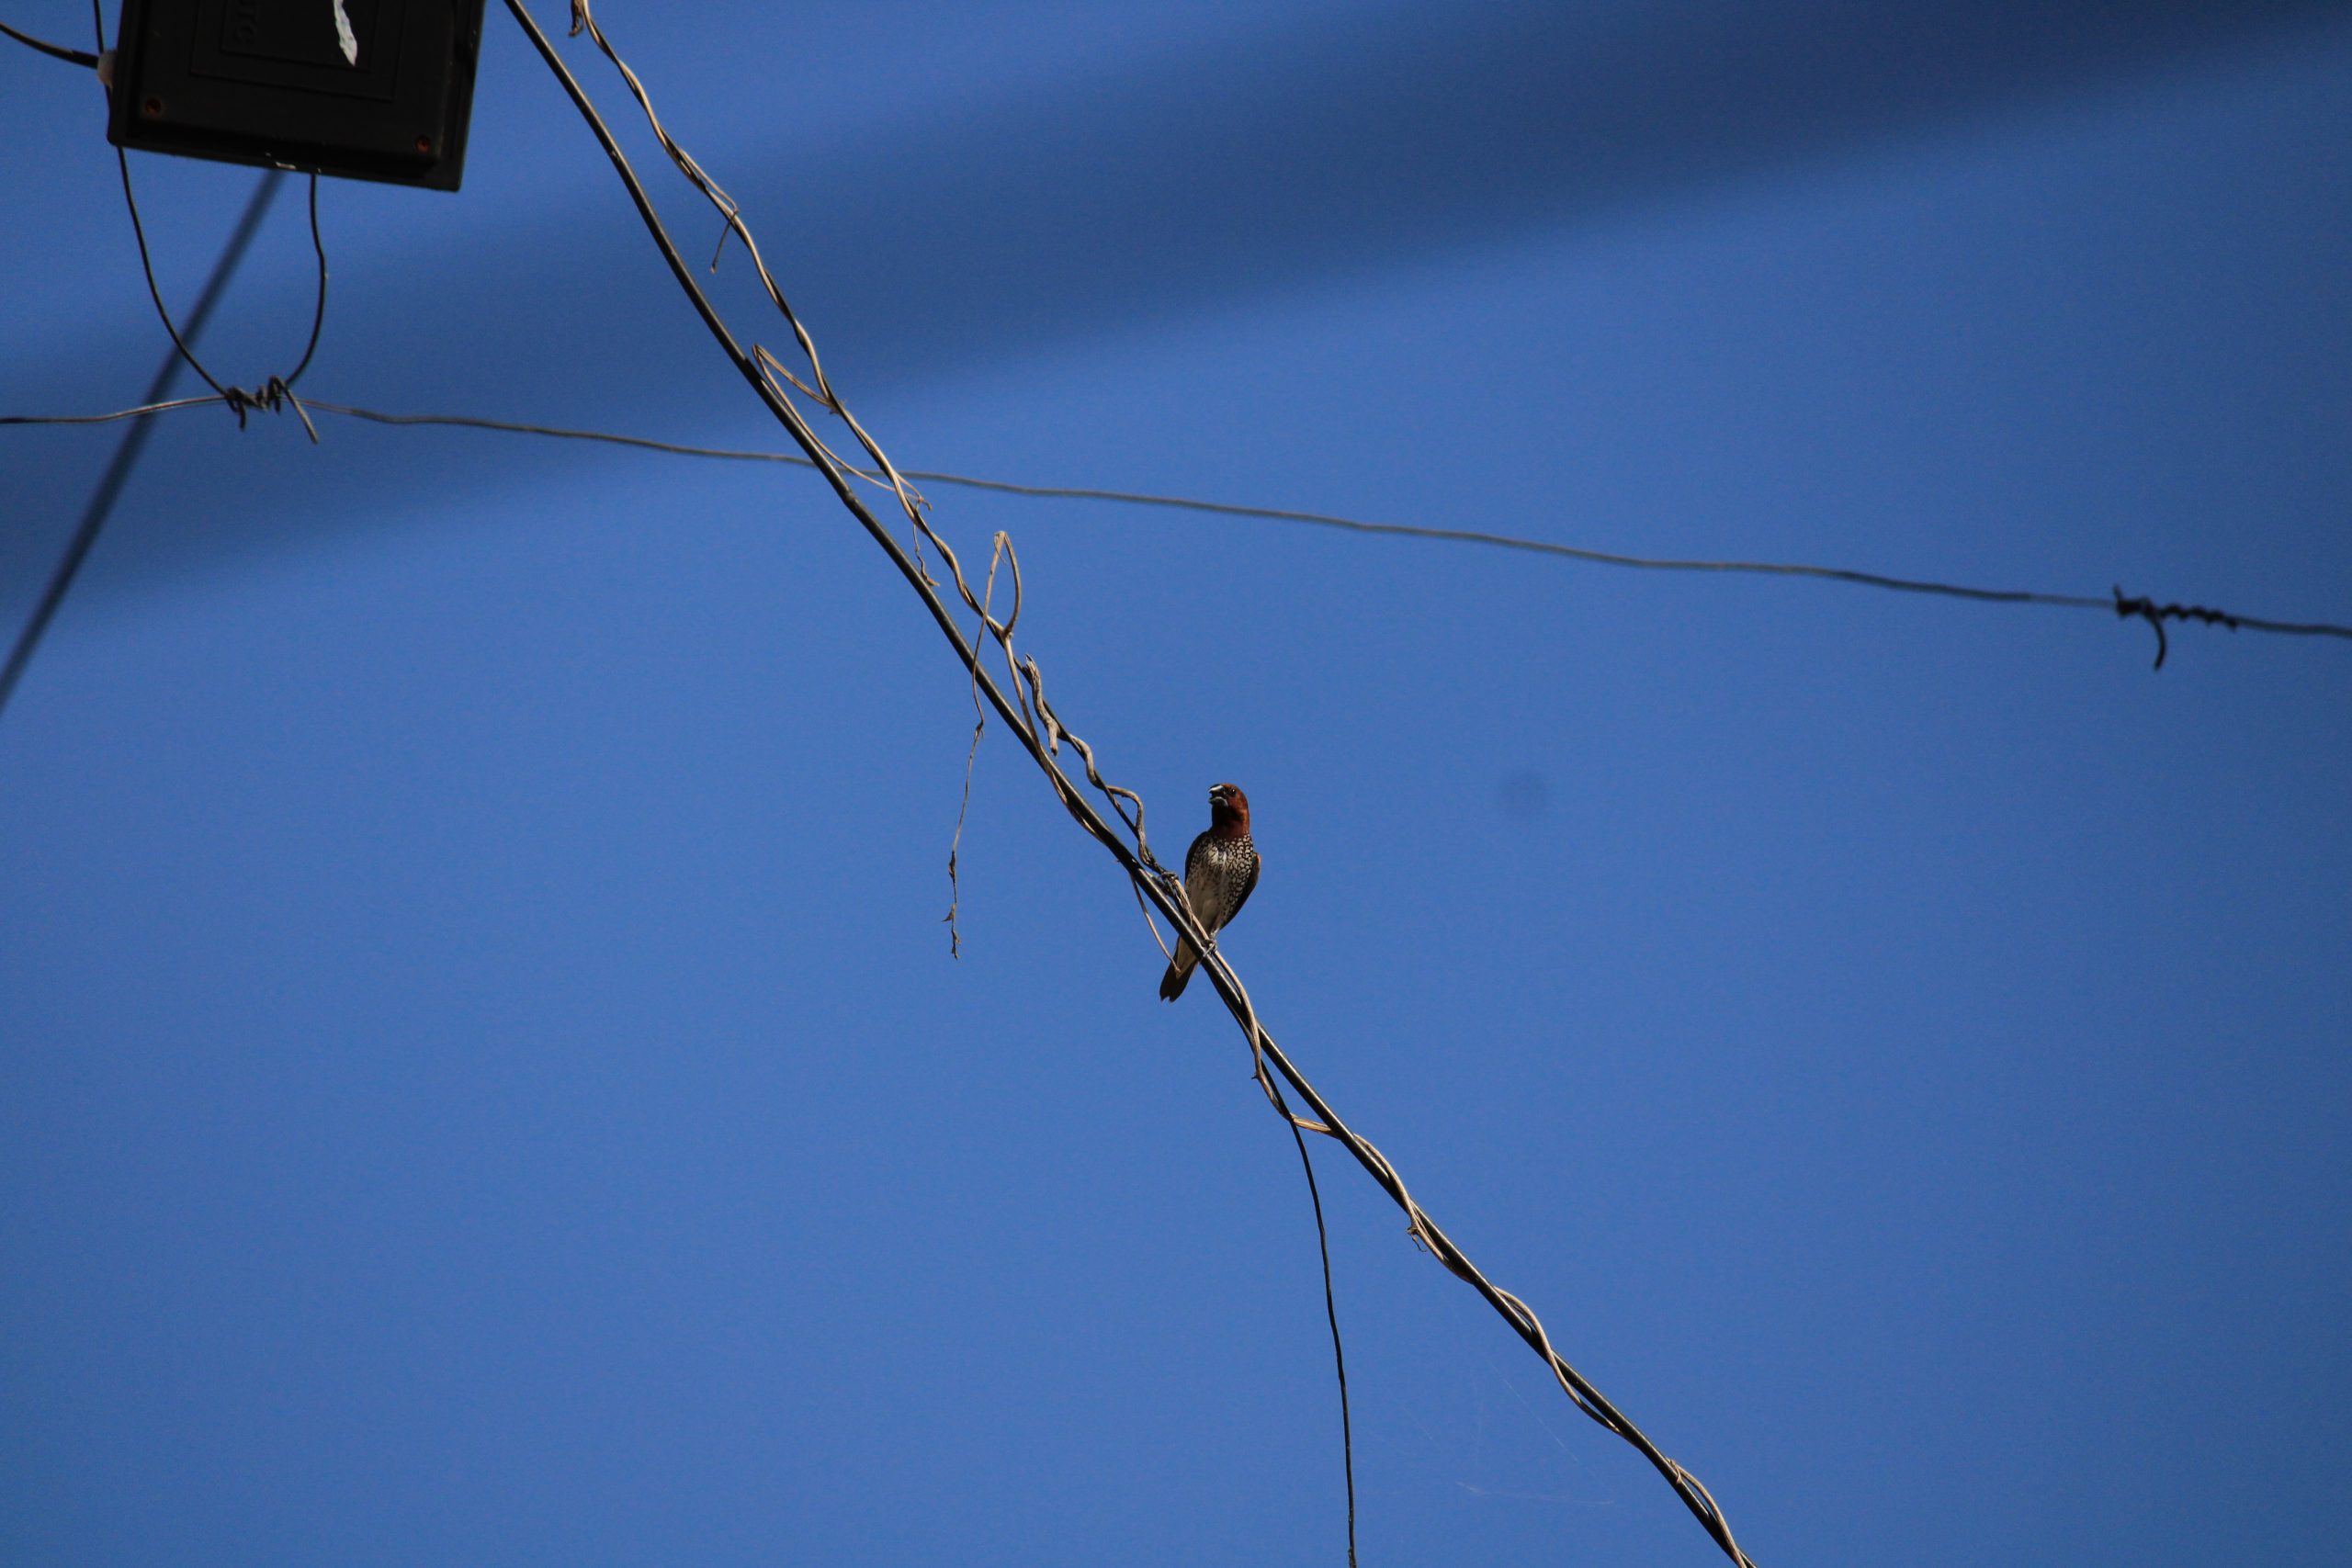 Bird sitting on wire